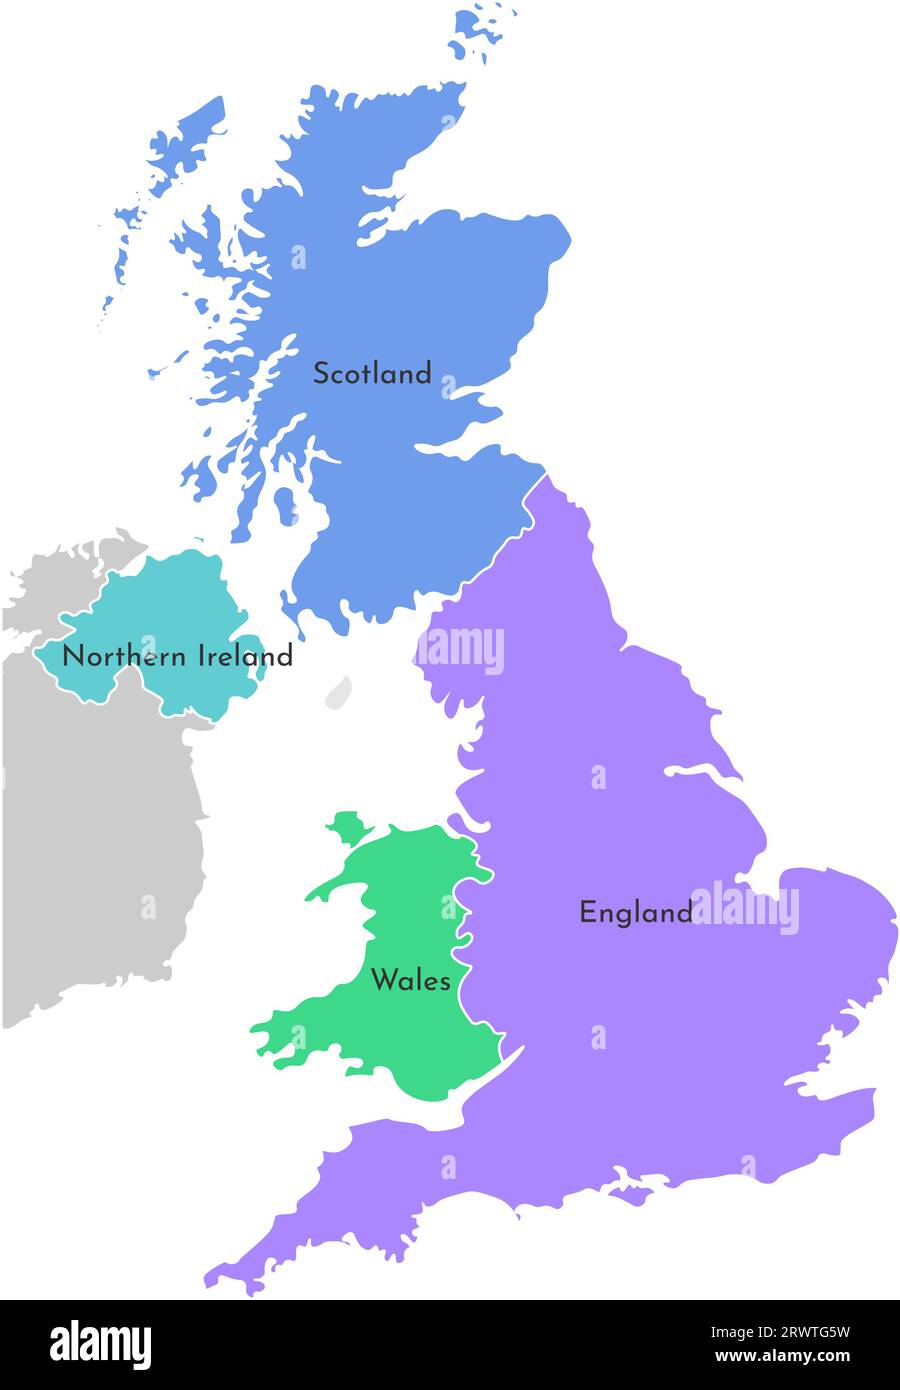 Vecteur coloré isolé carte simplifiée. Silhouette grise des provinces britanniques. Frontière de la division administrative - Écosse, pays de Galles, Angleterre, Nord I Illustration de Vecteur